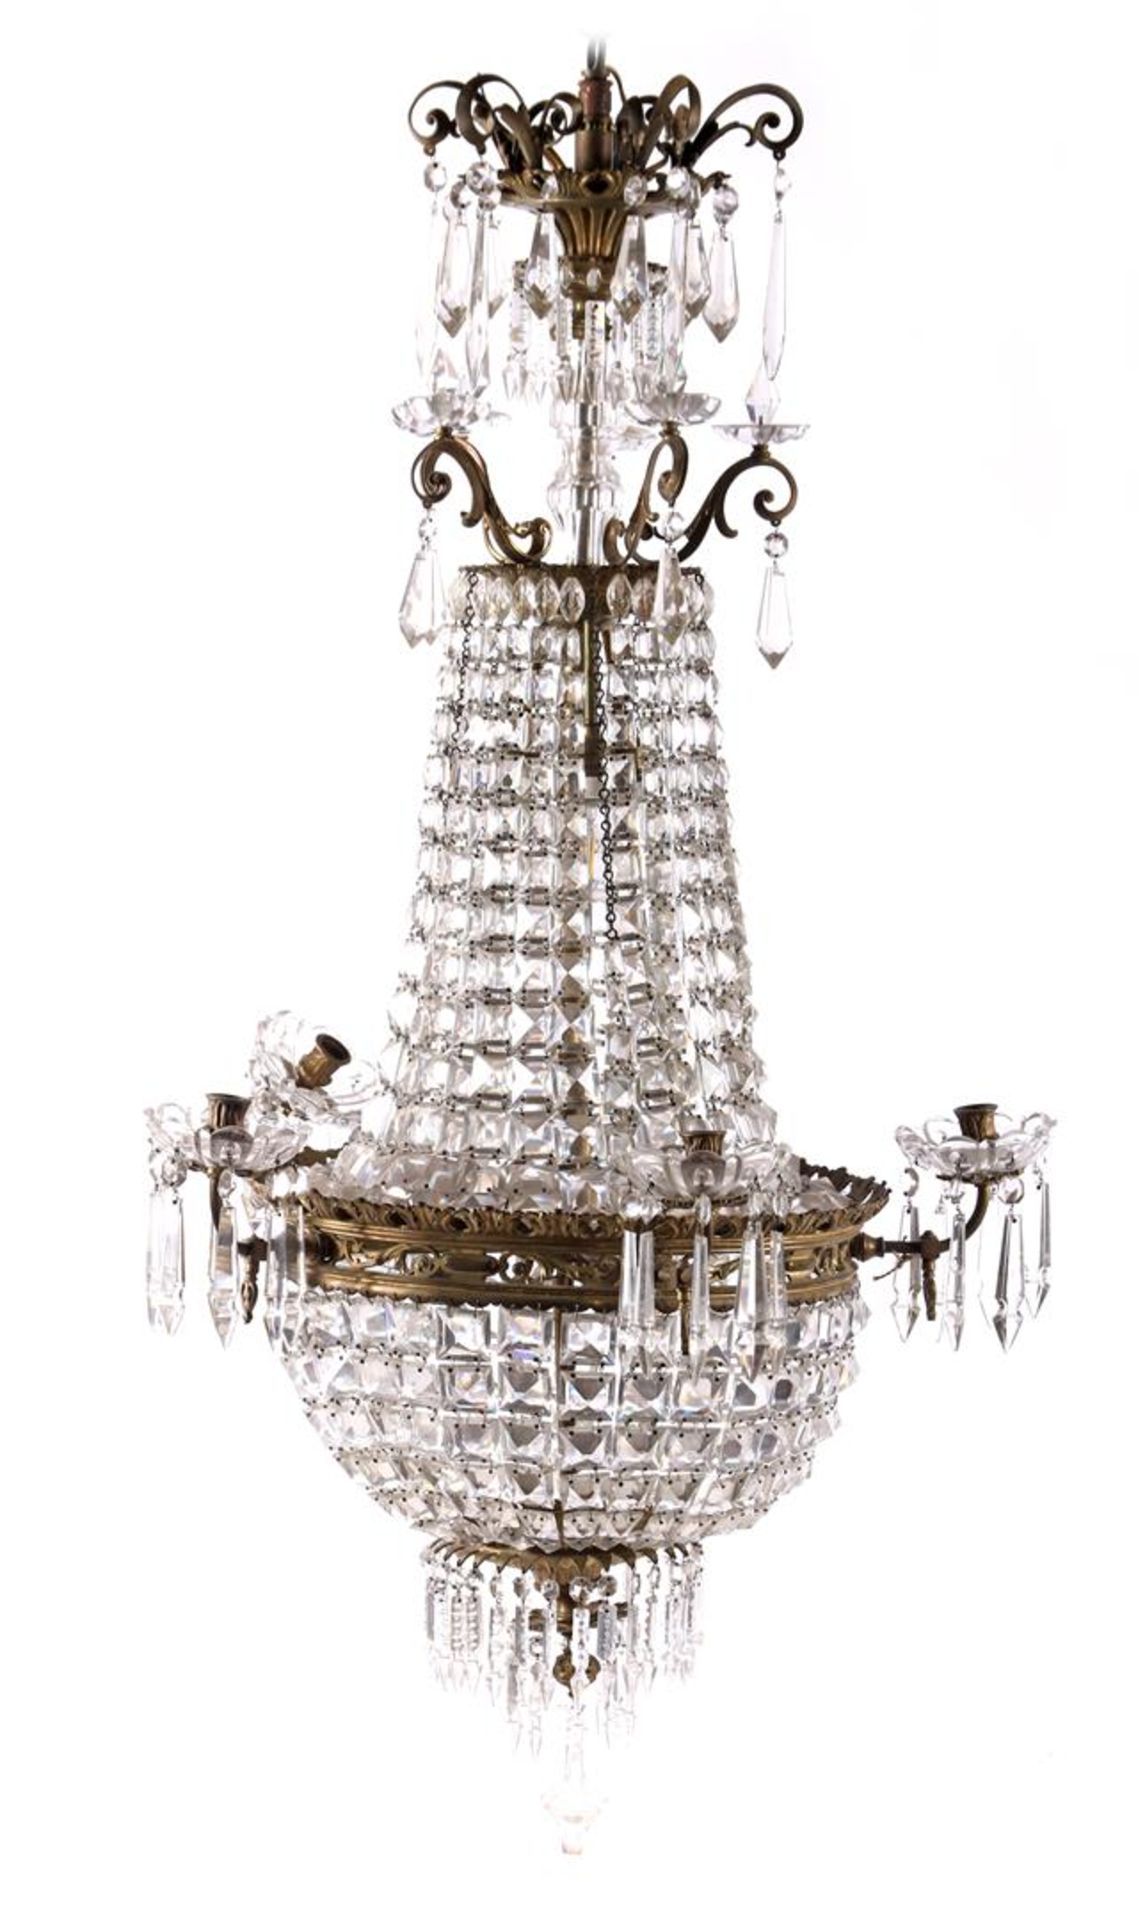 Pocket chandelier lamp